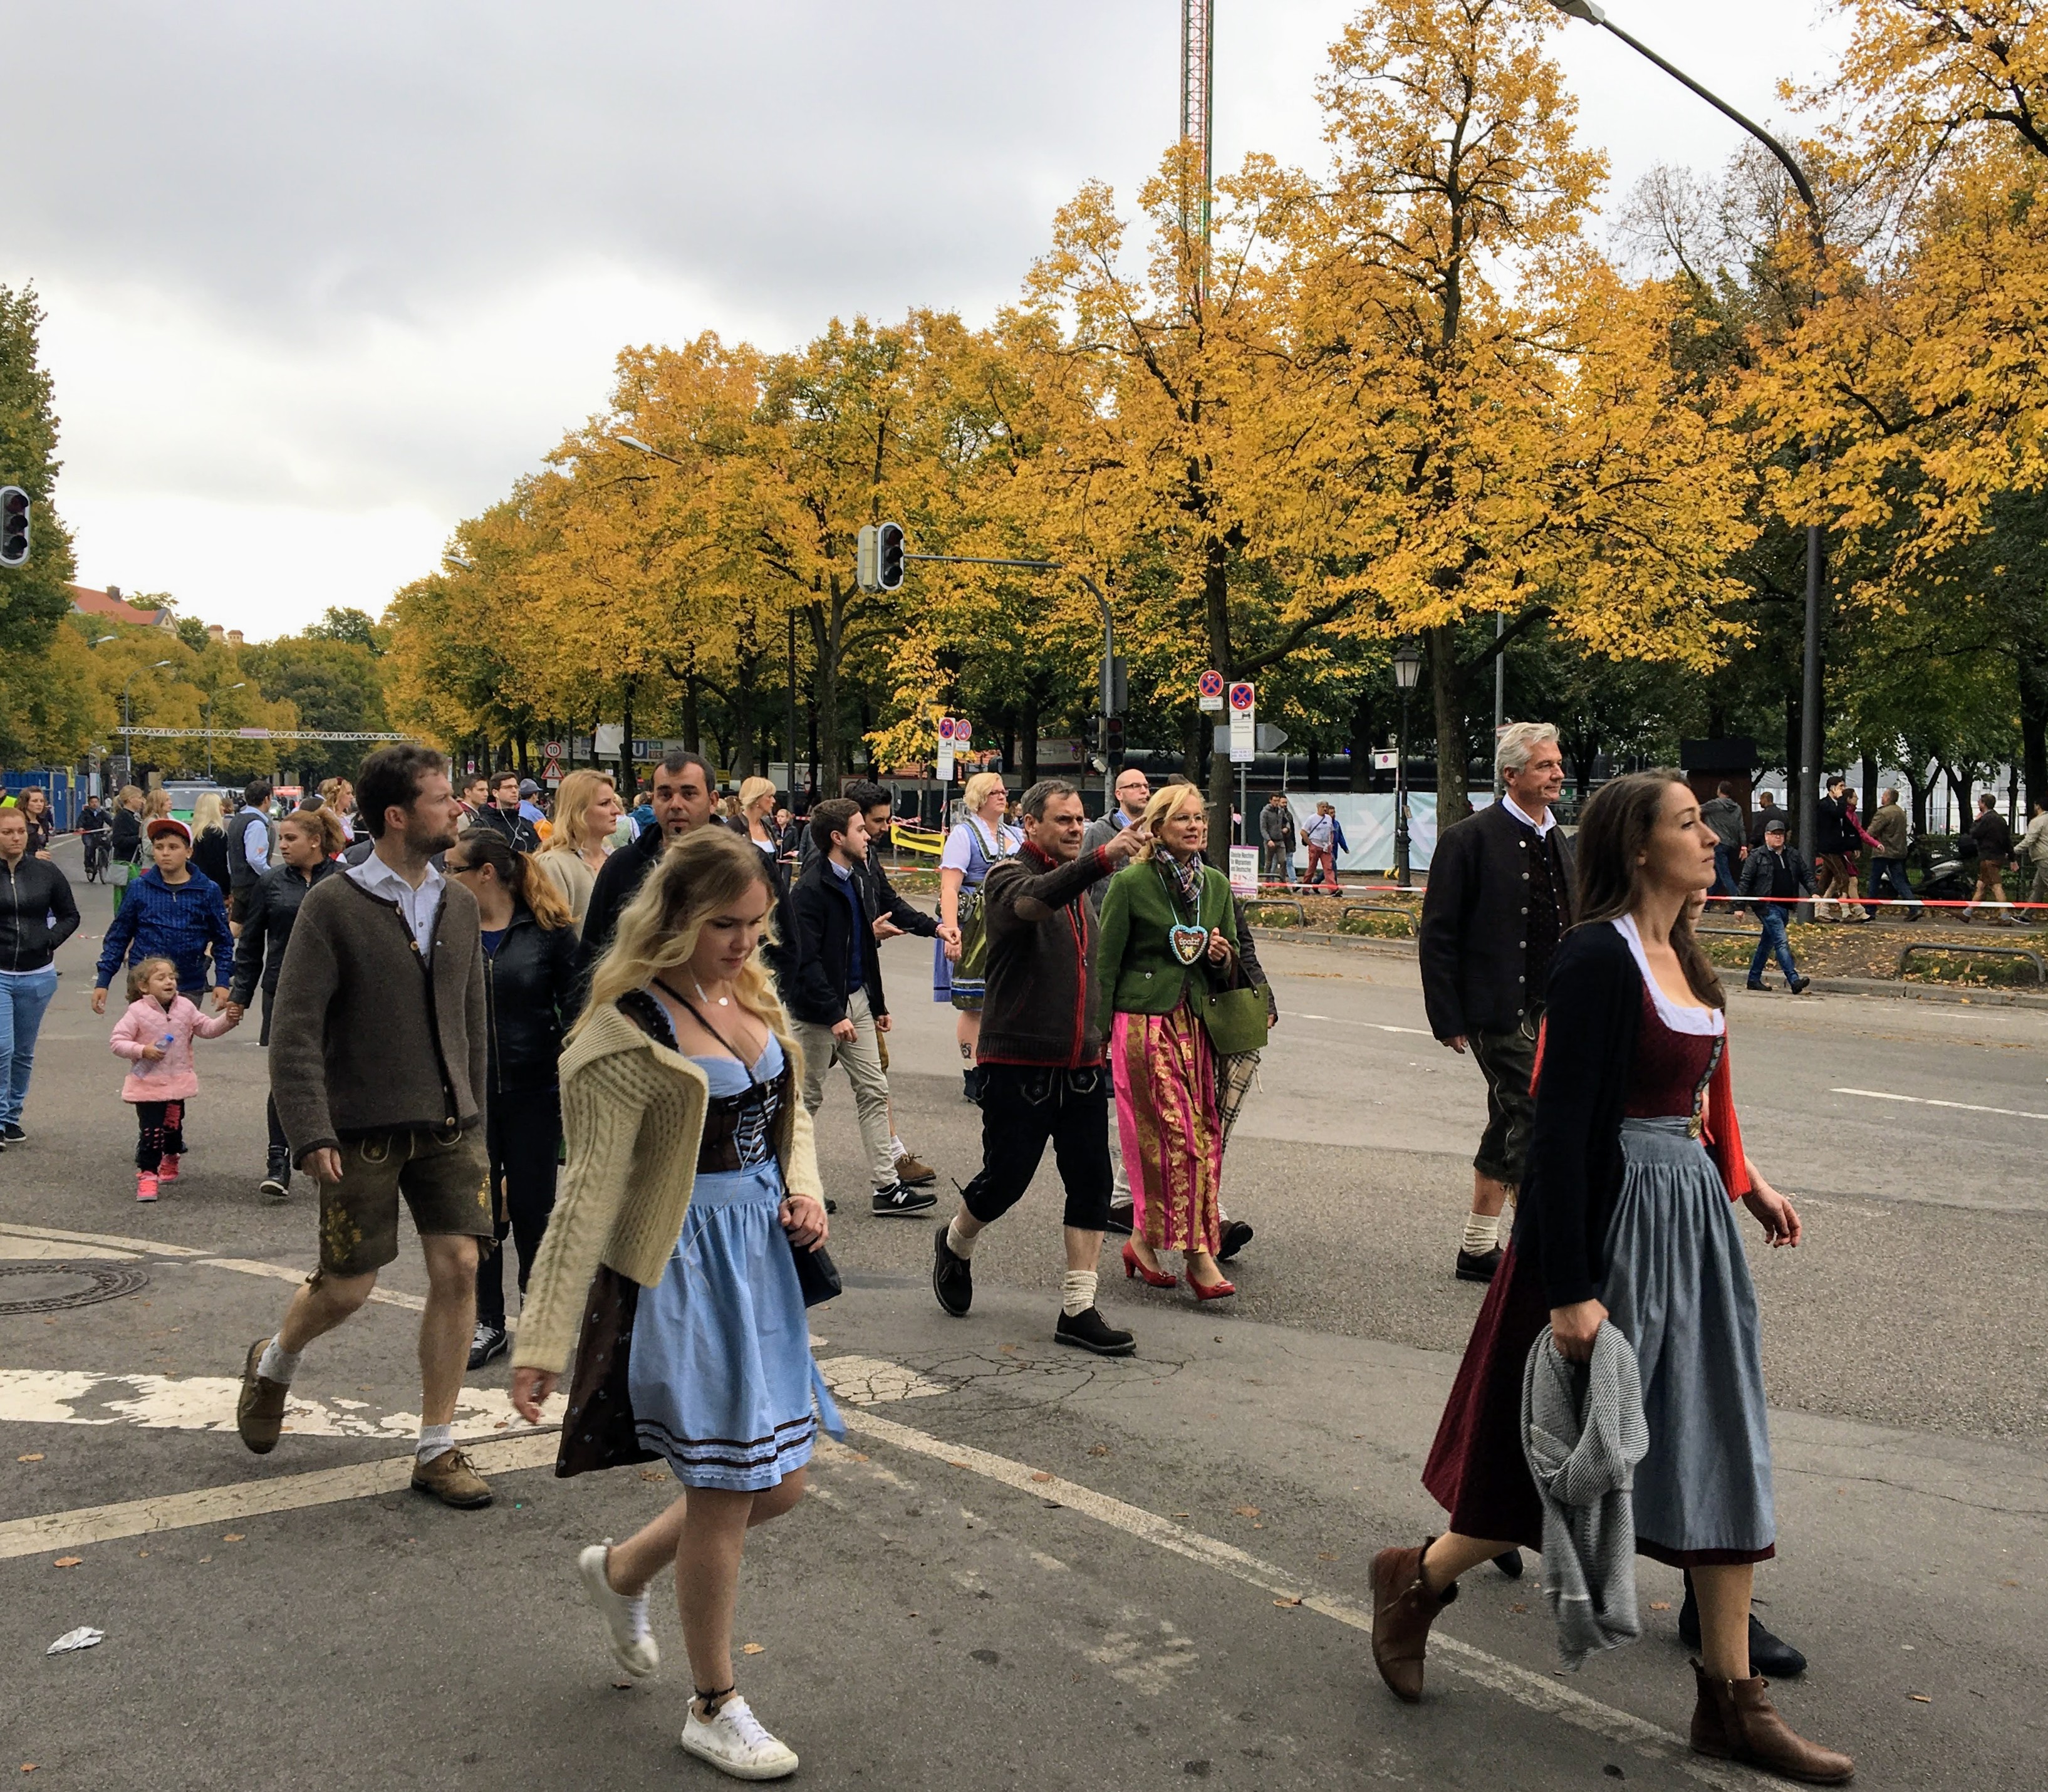 Festival goers walking to Oktoberfest in Munich, Germany